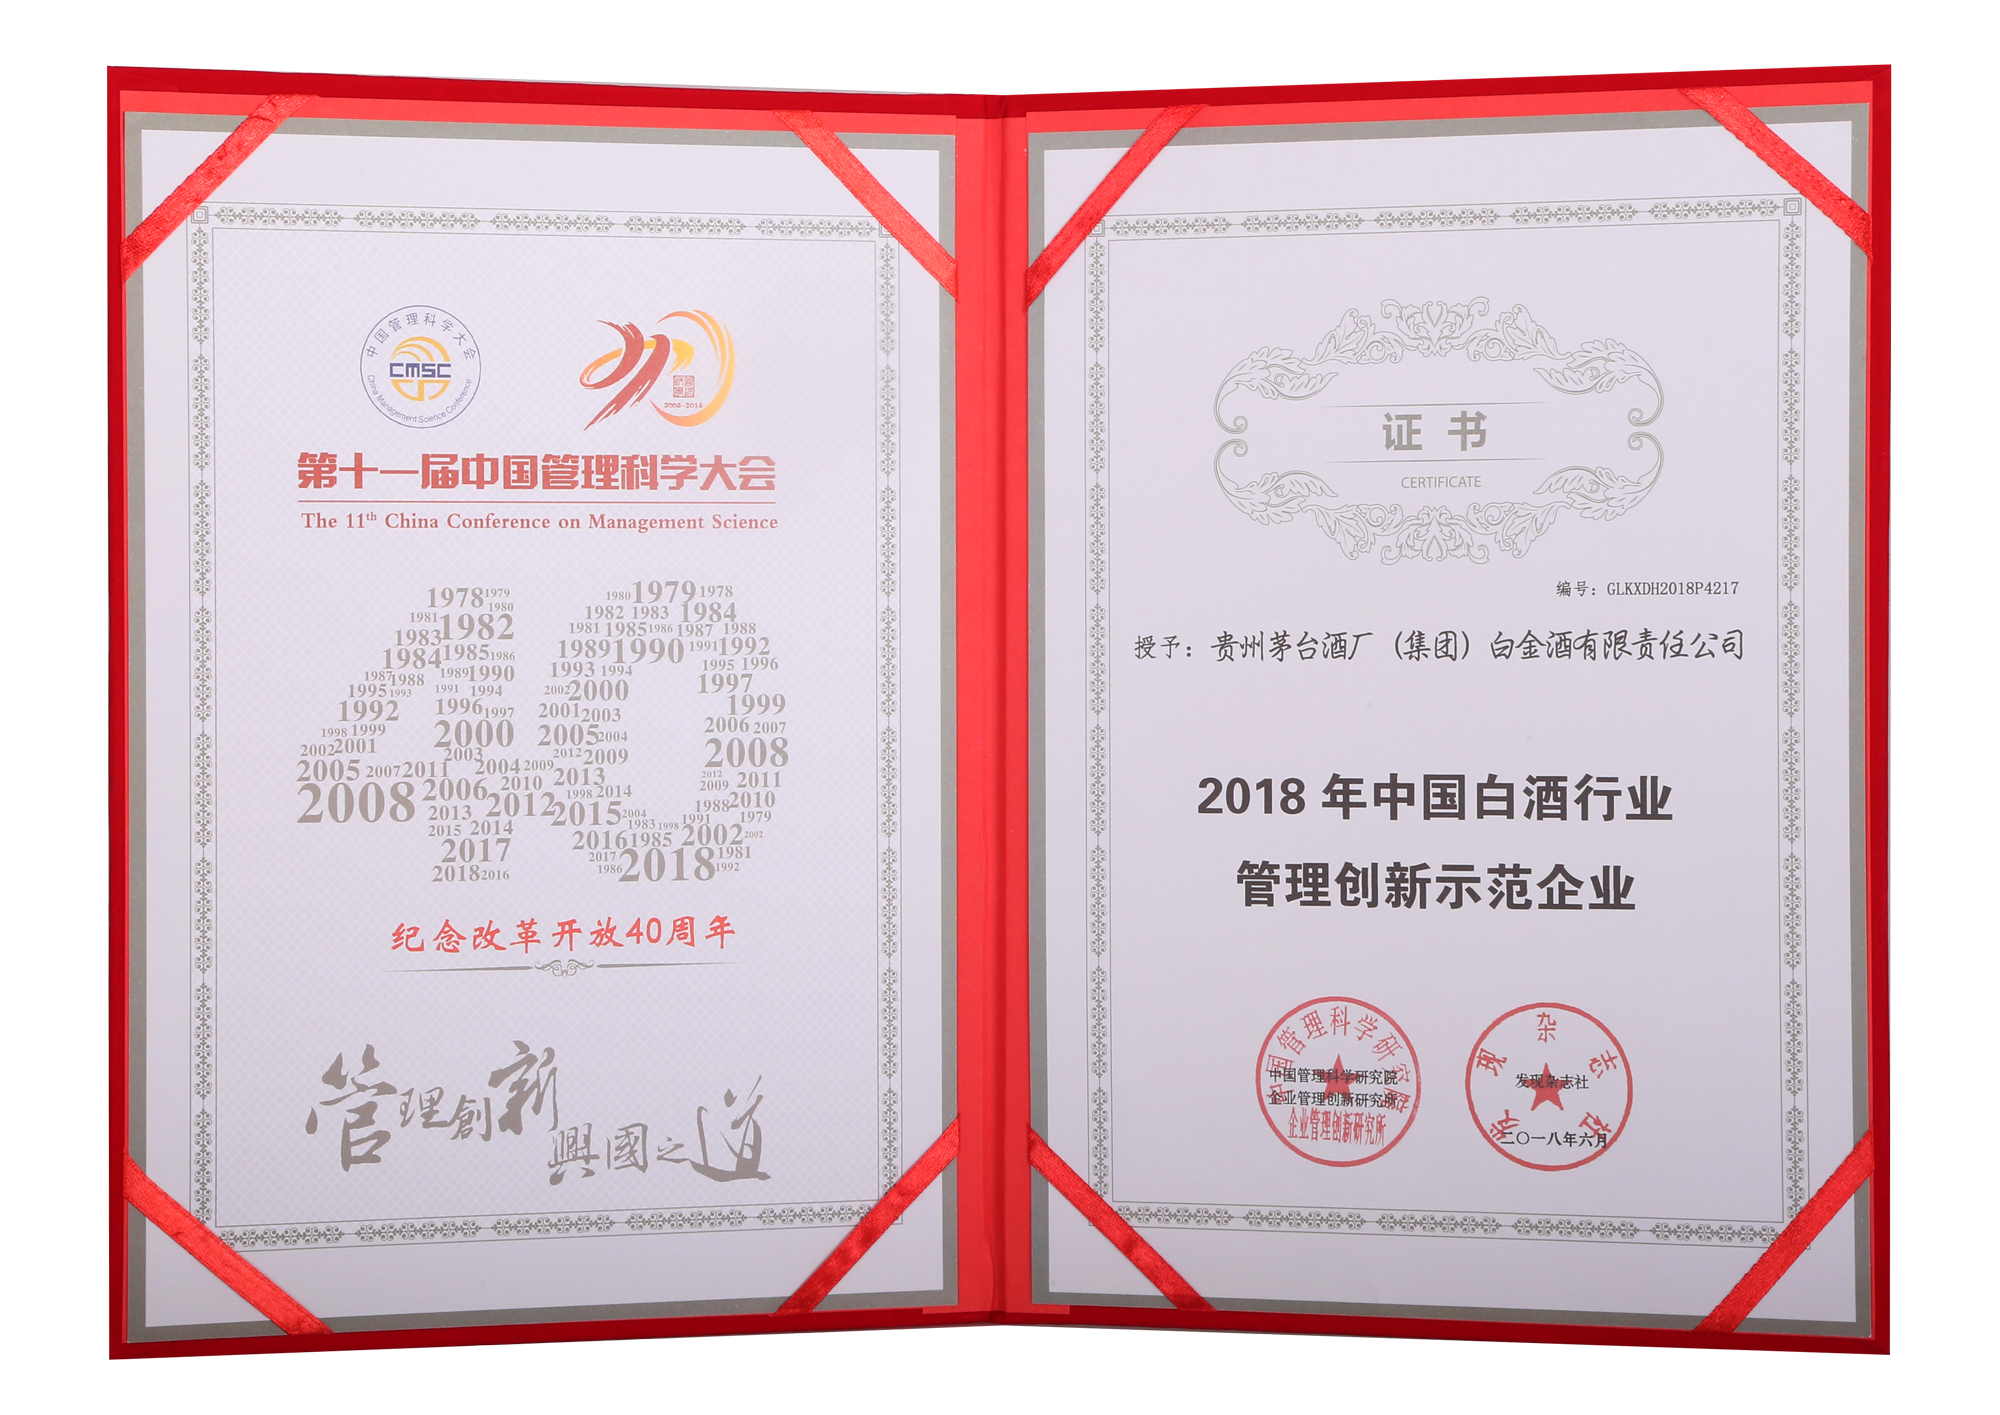 茅台集团白金酒公司被评为2018年中国白酒行业管理创新示范企业